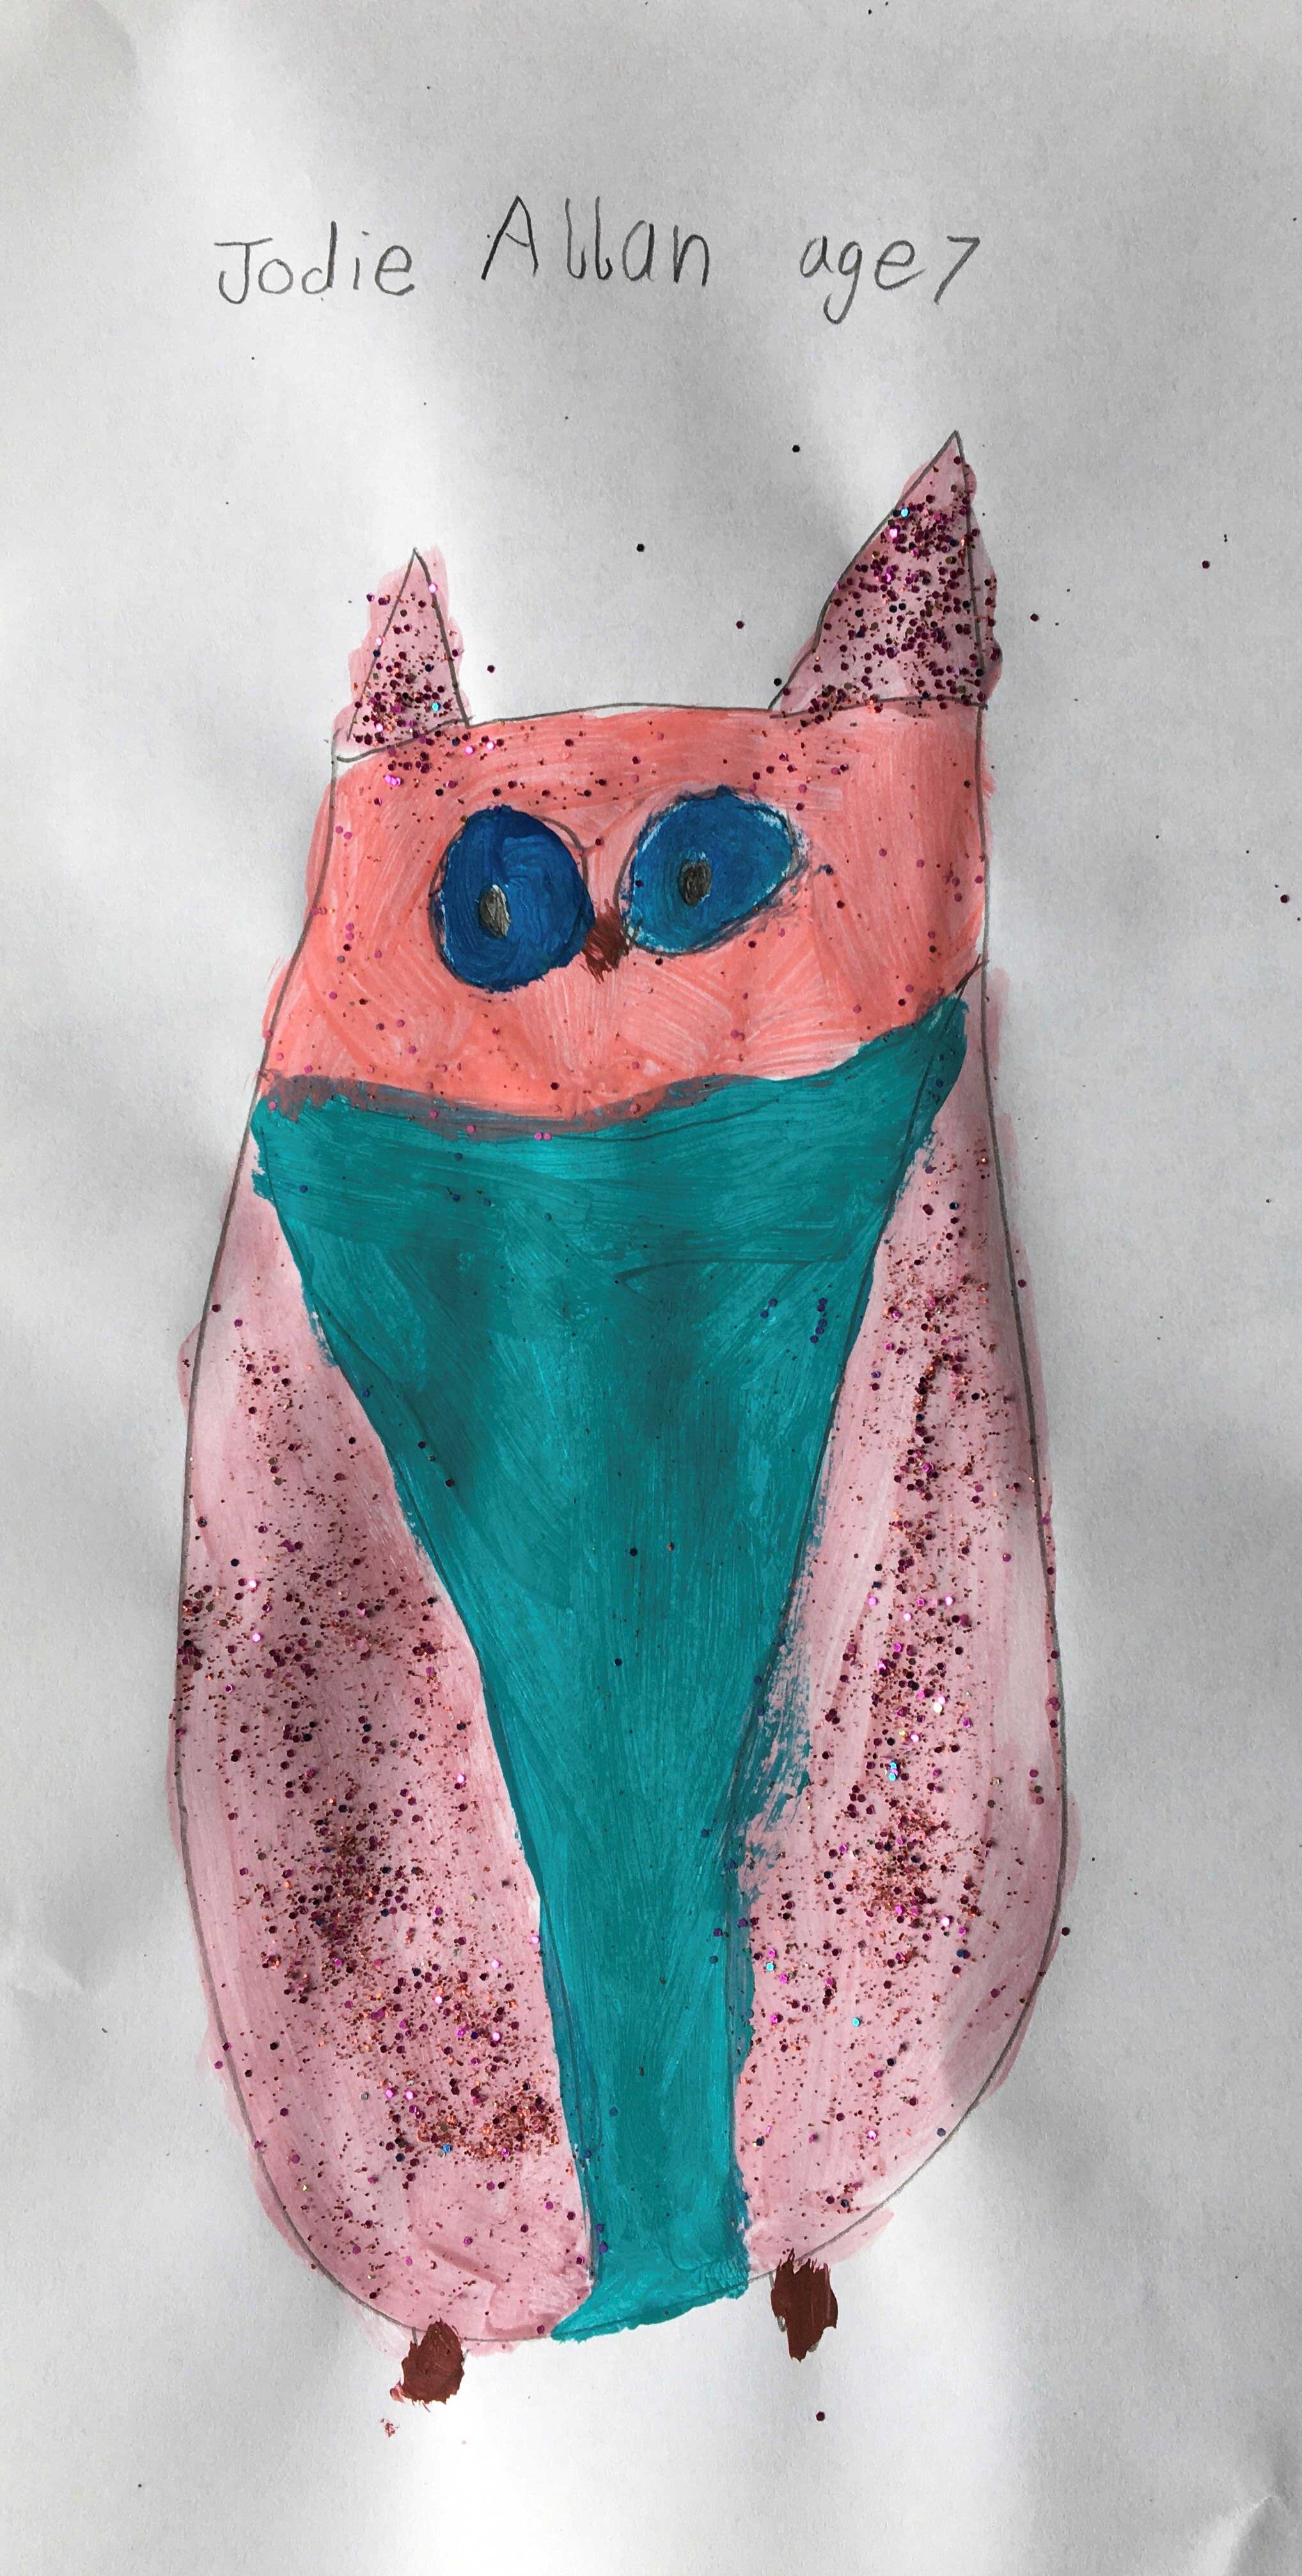 Glitter Owl by Jodie Allan age 7